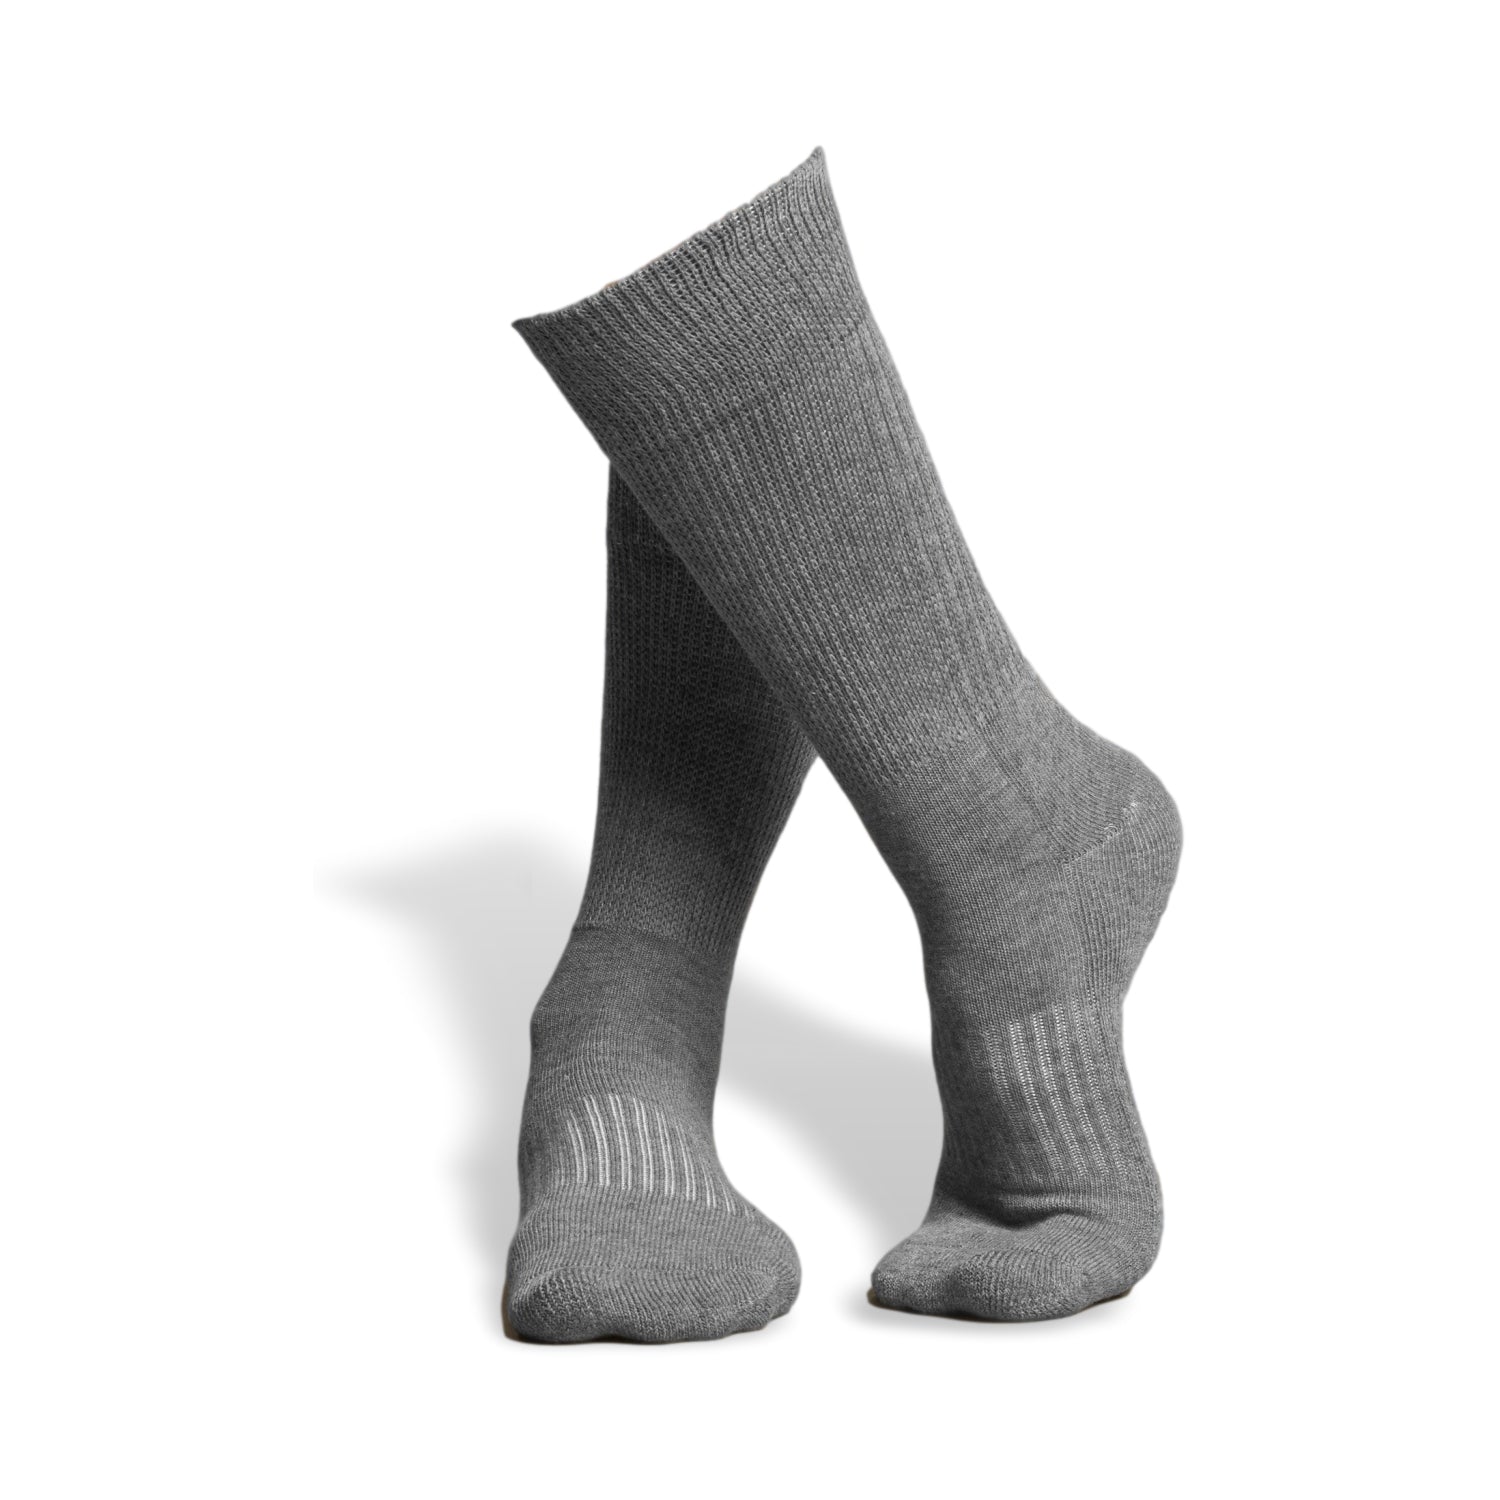 AHS Non Slip Grippy Hospital Socks For Sale